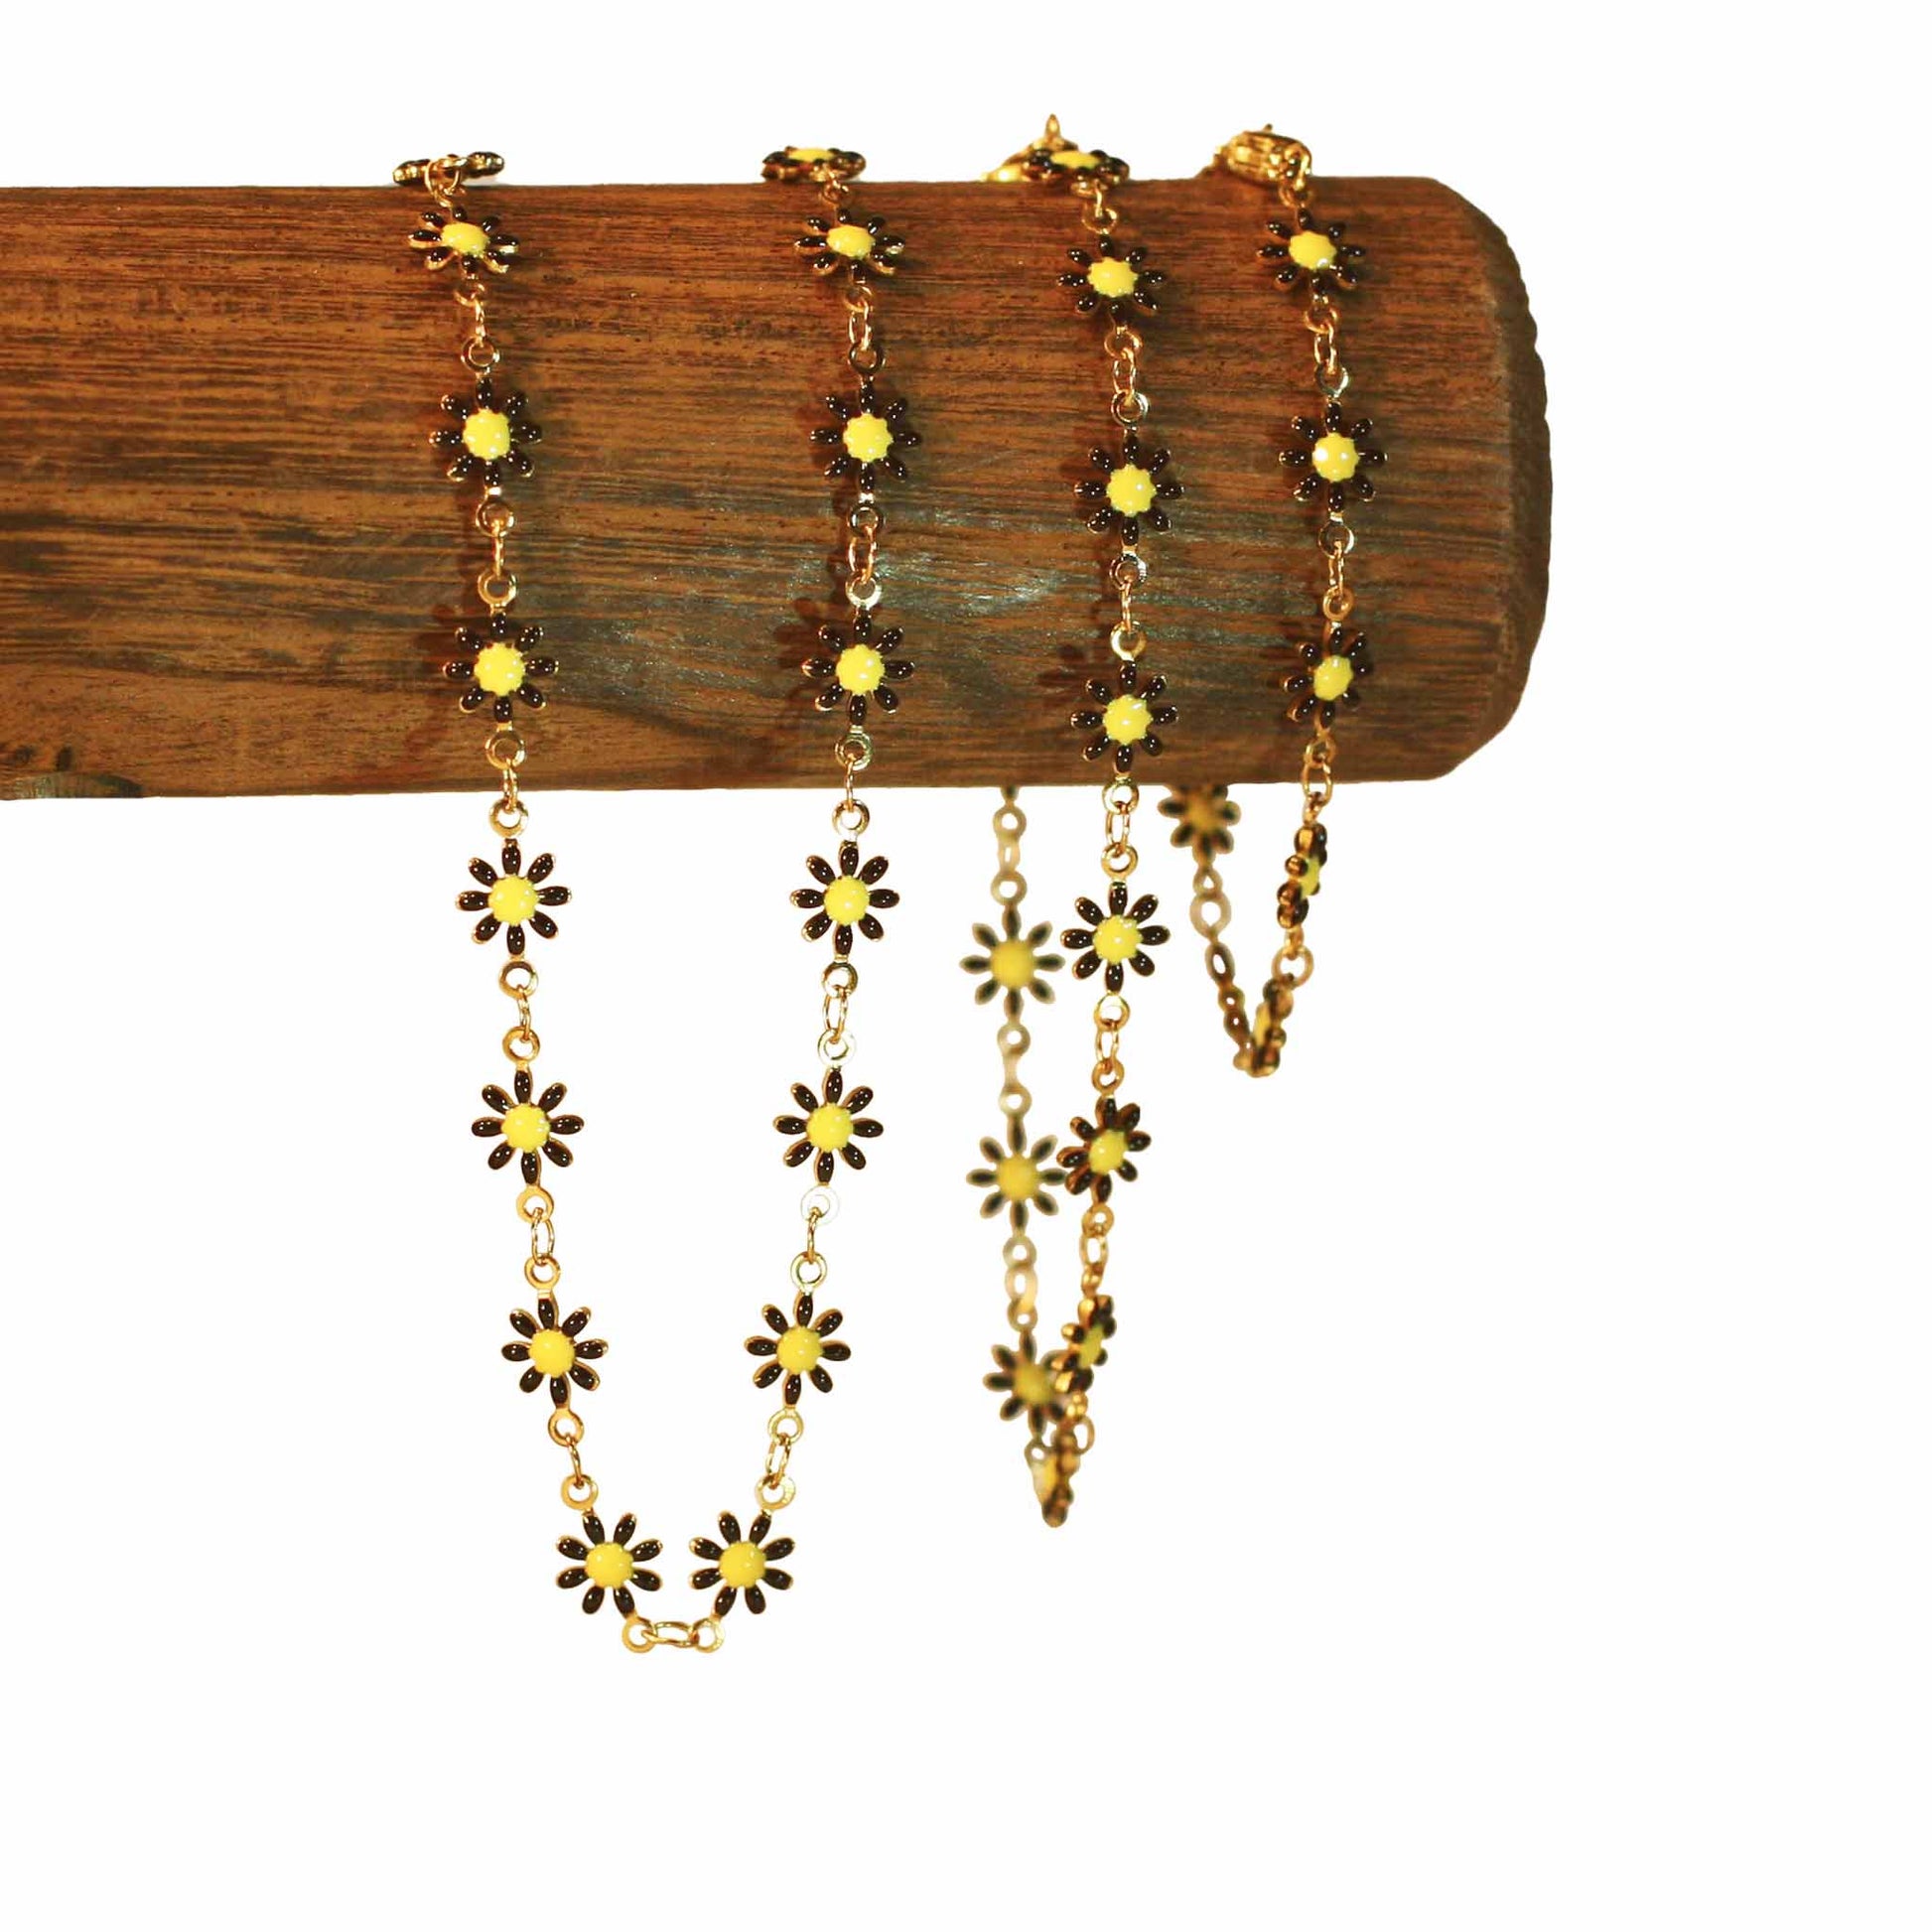 Flower - Black - Golden - Trio necklace, bracelet, anklet